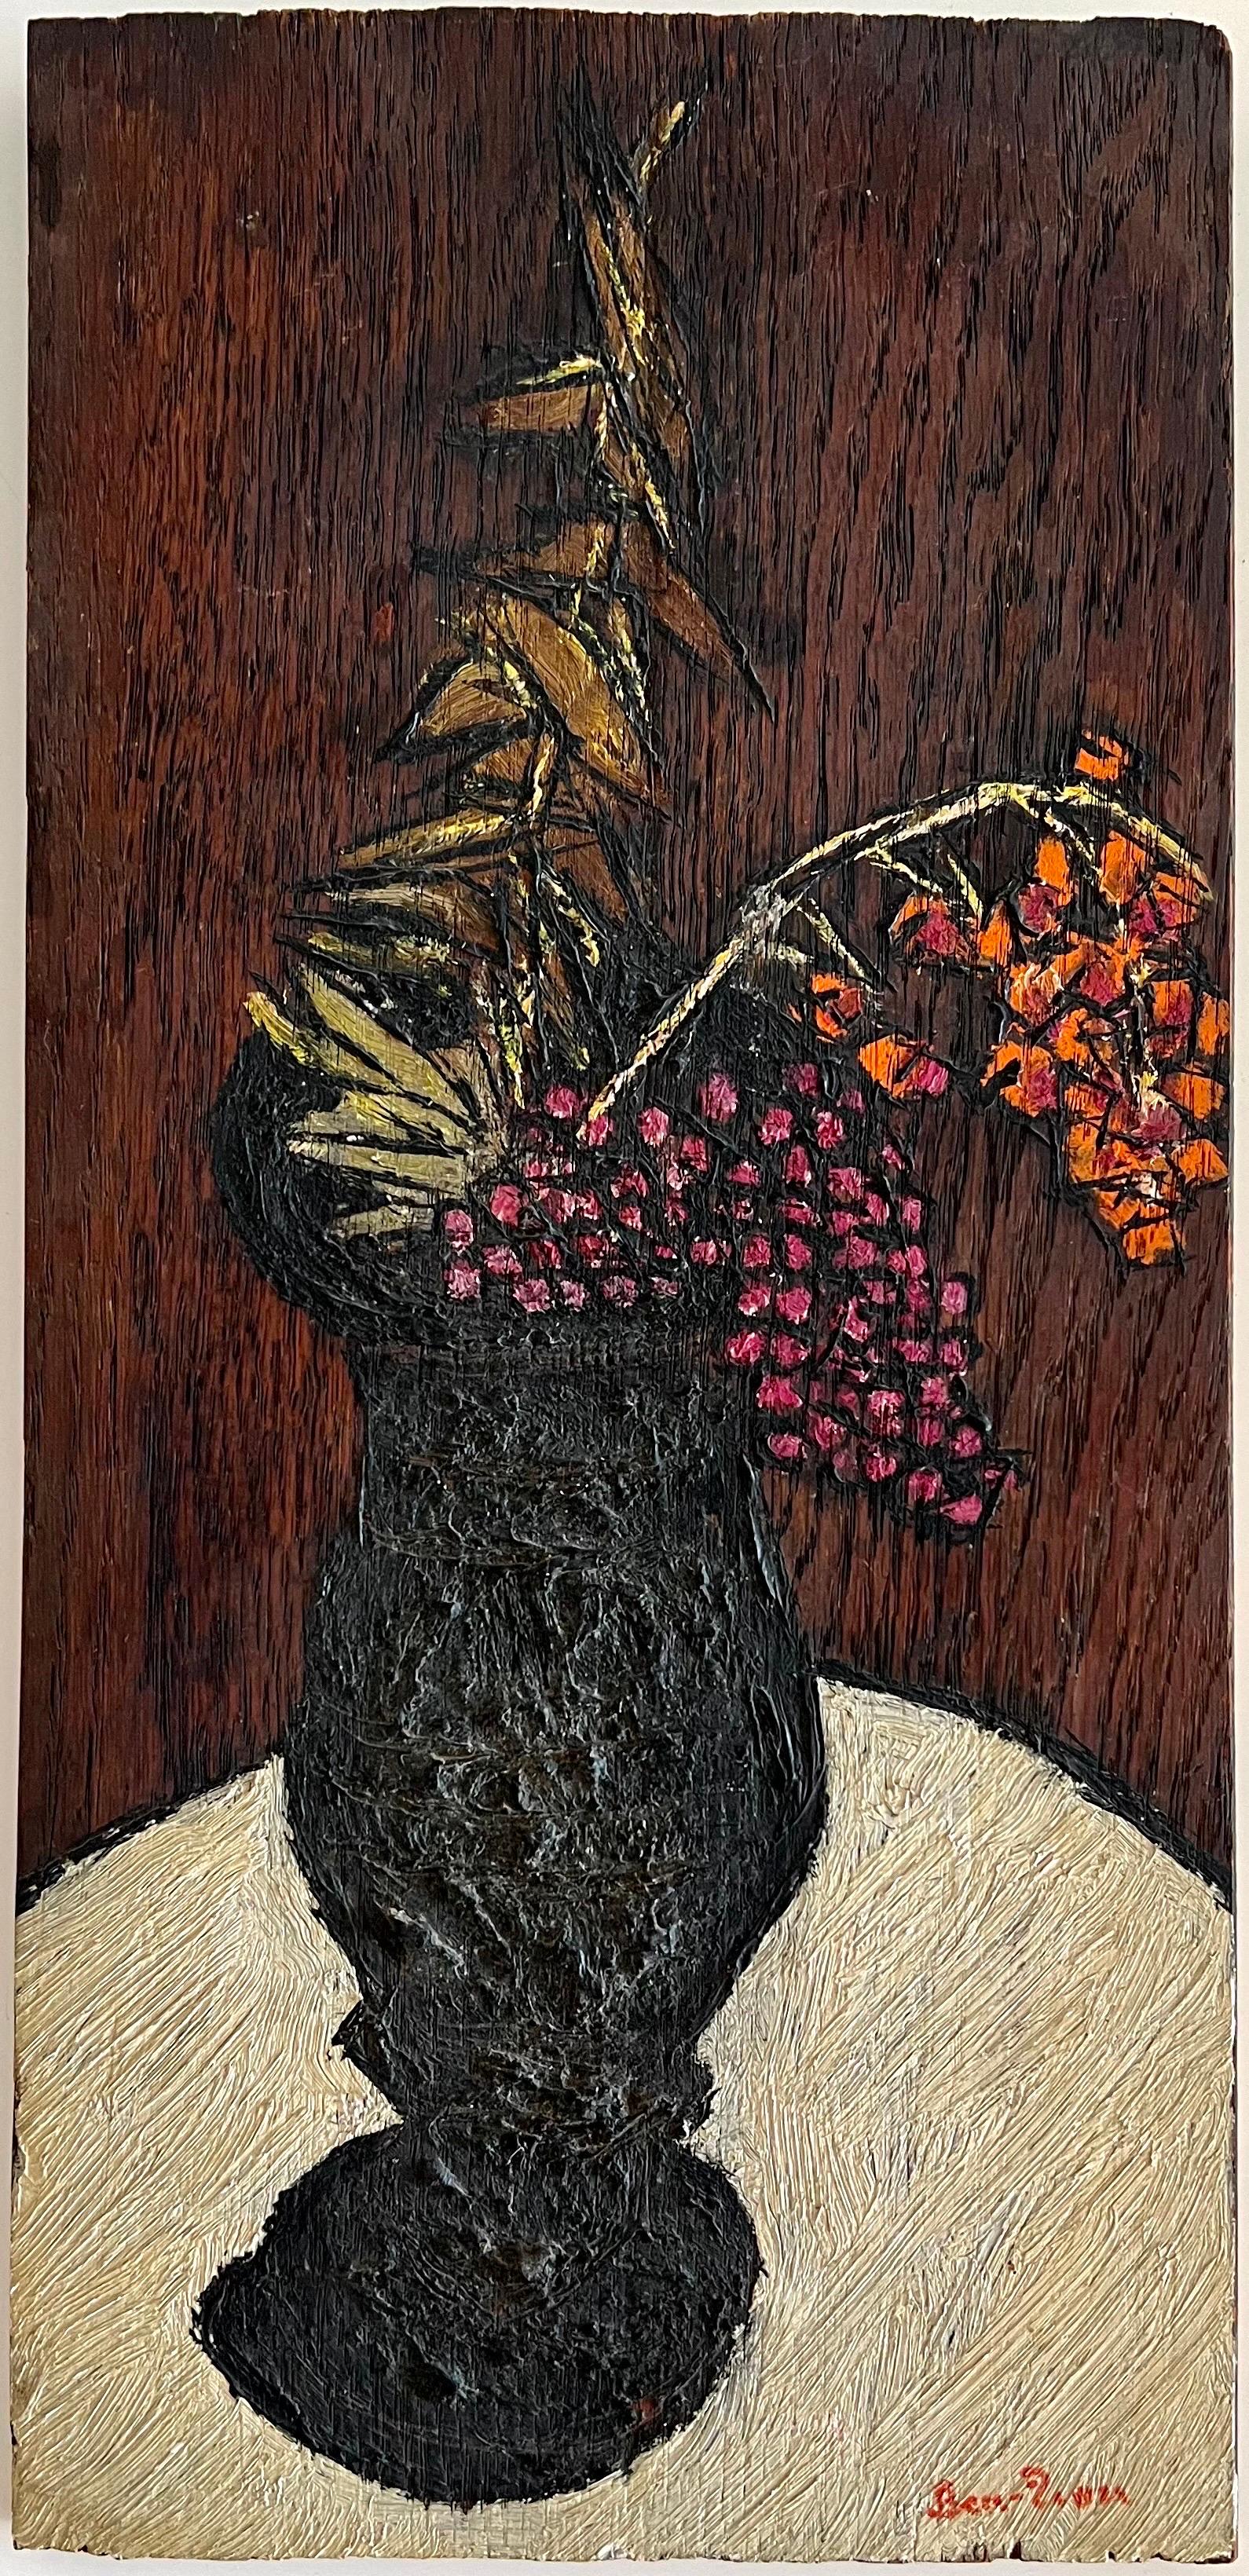 Figurative Painting Ben-Zion Weinman - Vase expressionniste moderniste américain, fleurs de l'artiste de la WPA Ben ZIon